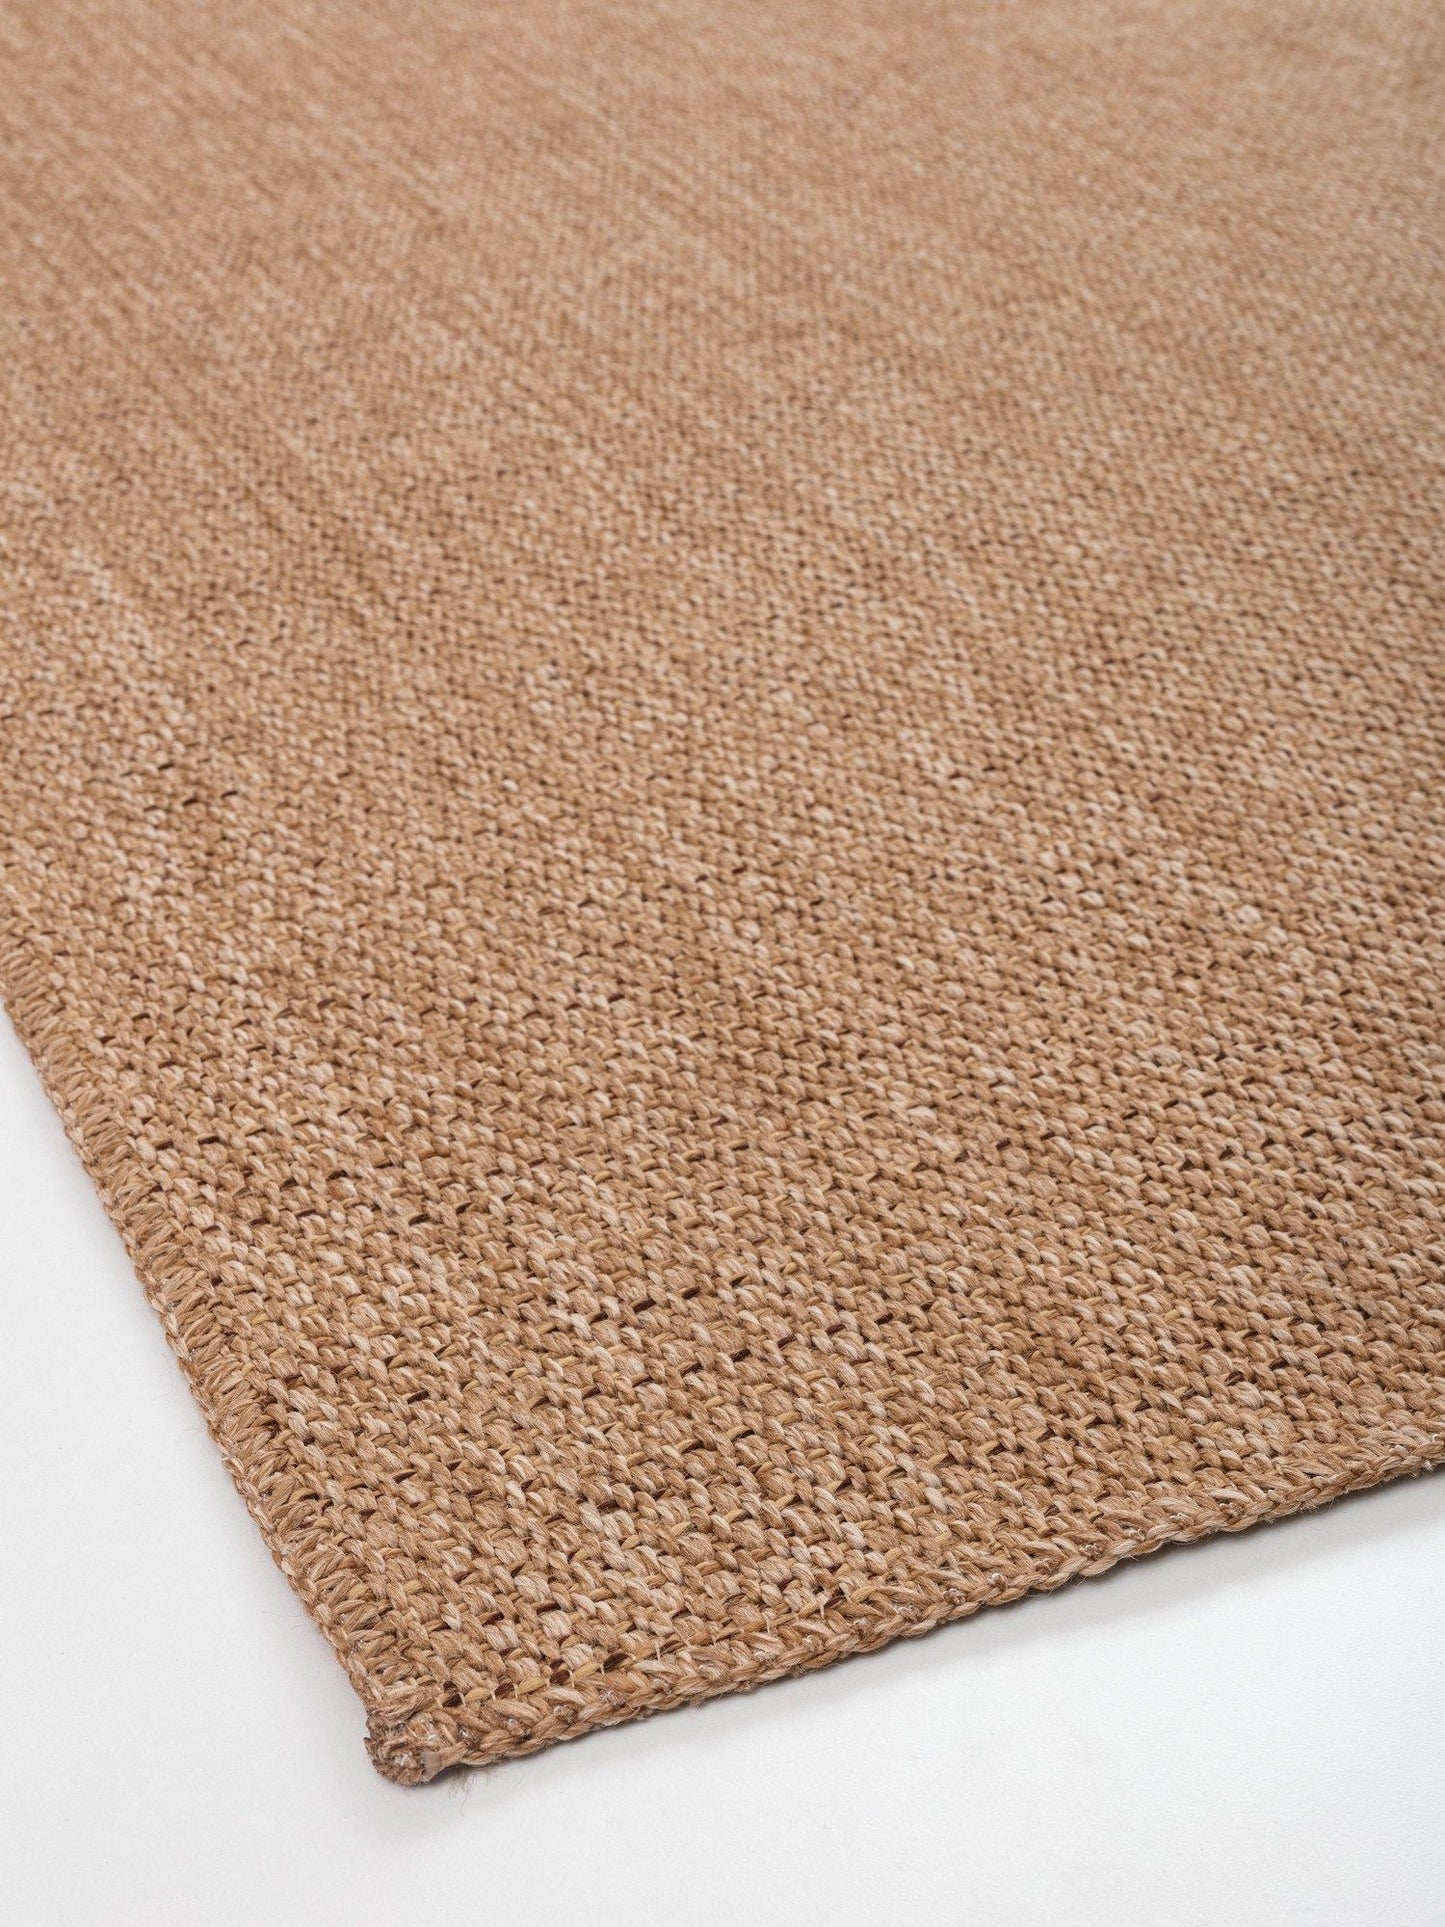 0604 Jut - Brown - Carpet (80 x 150)